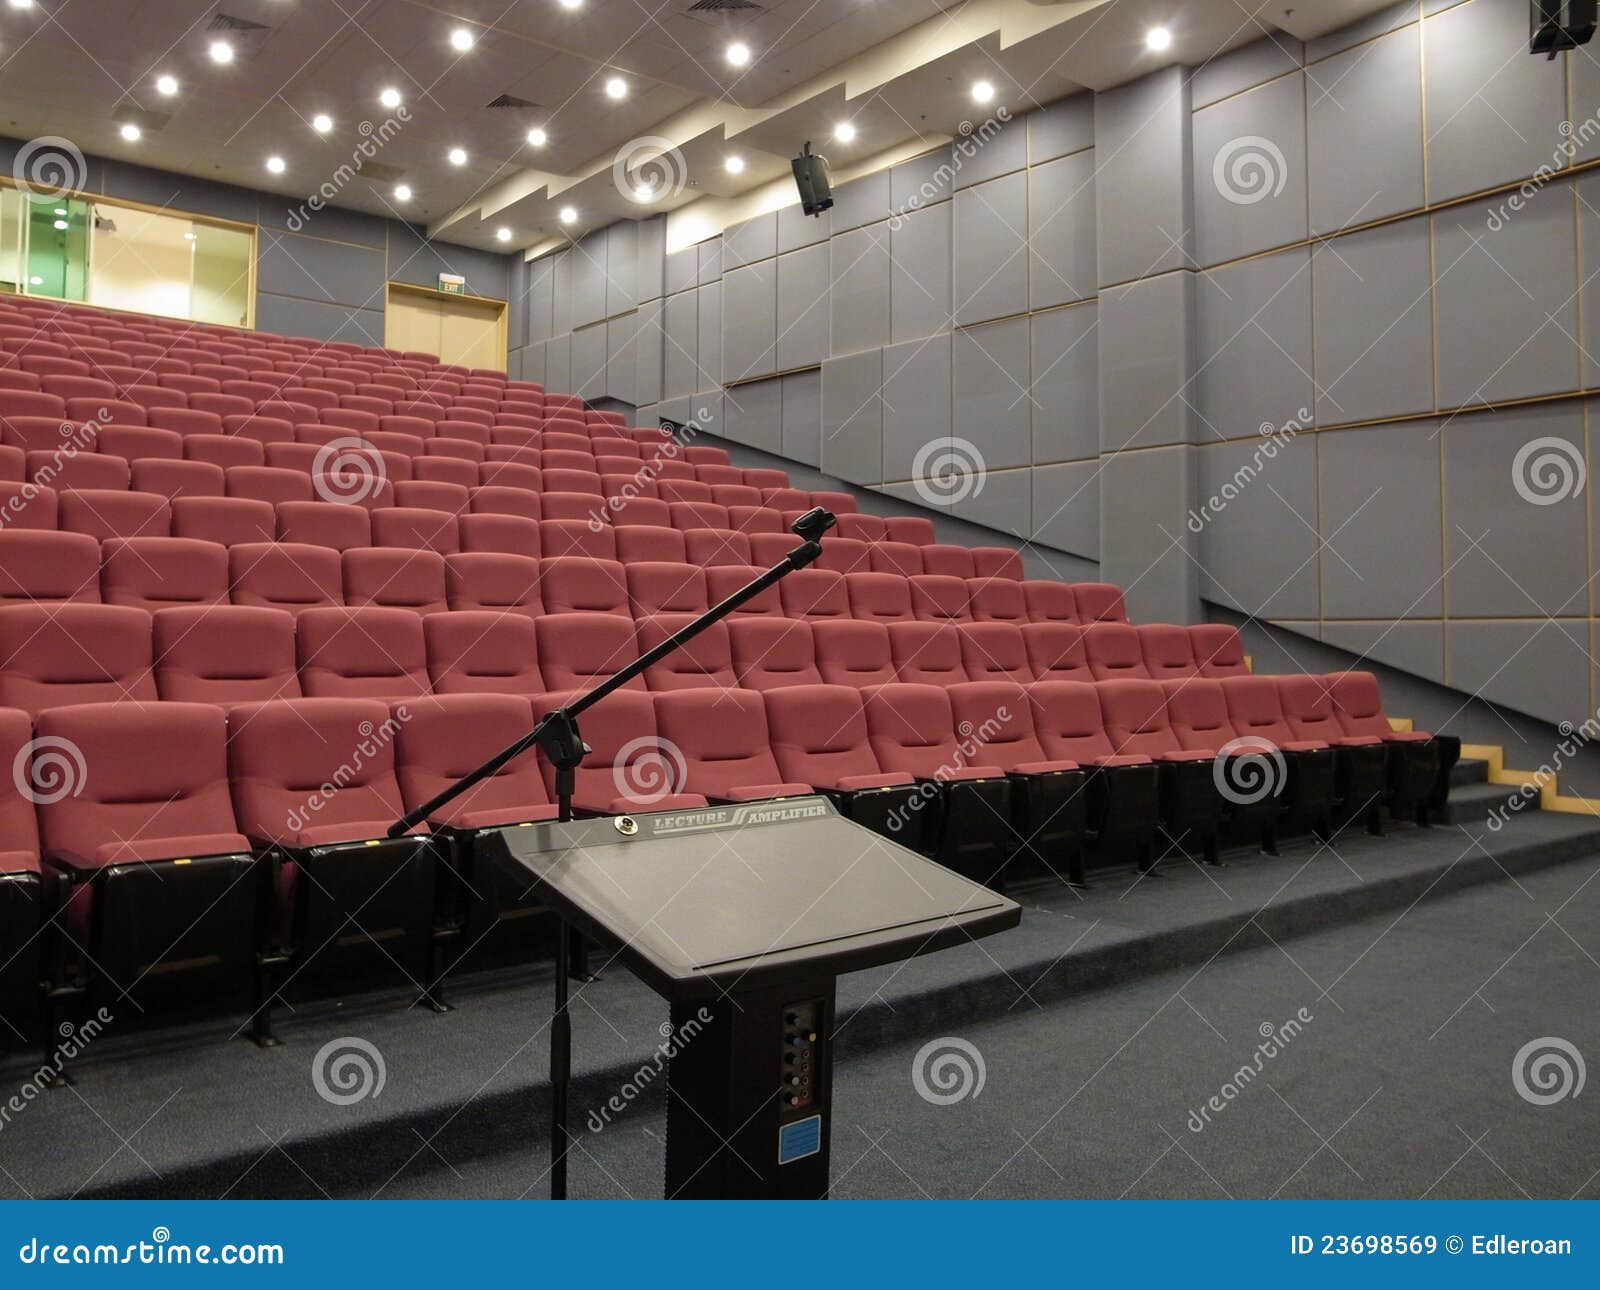 empty auditorium with podium/rostrum